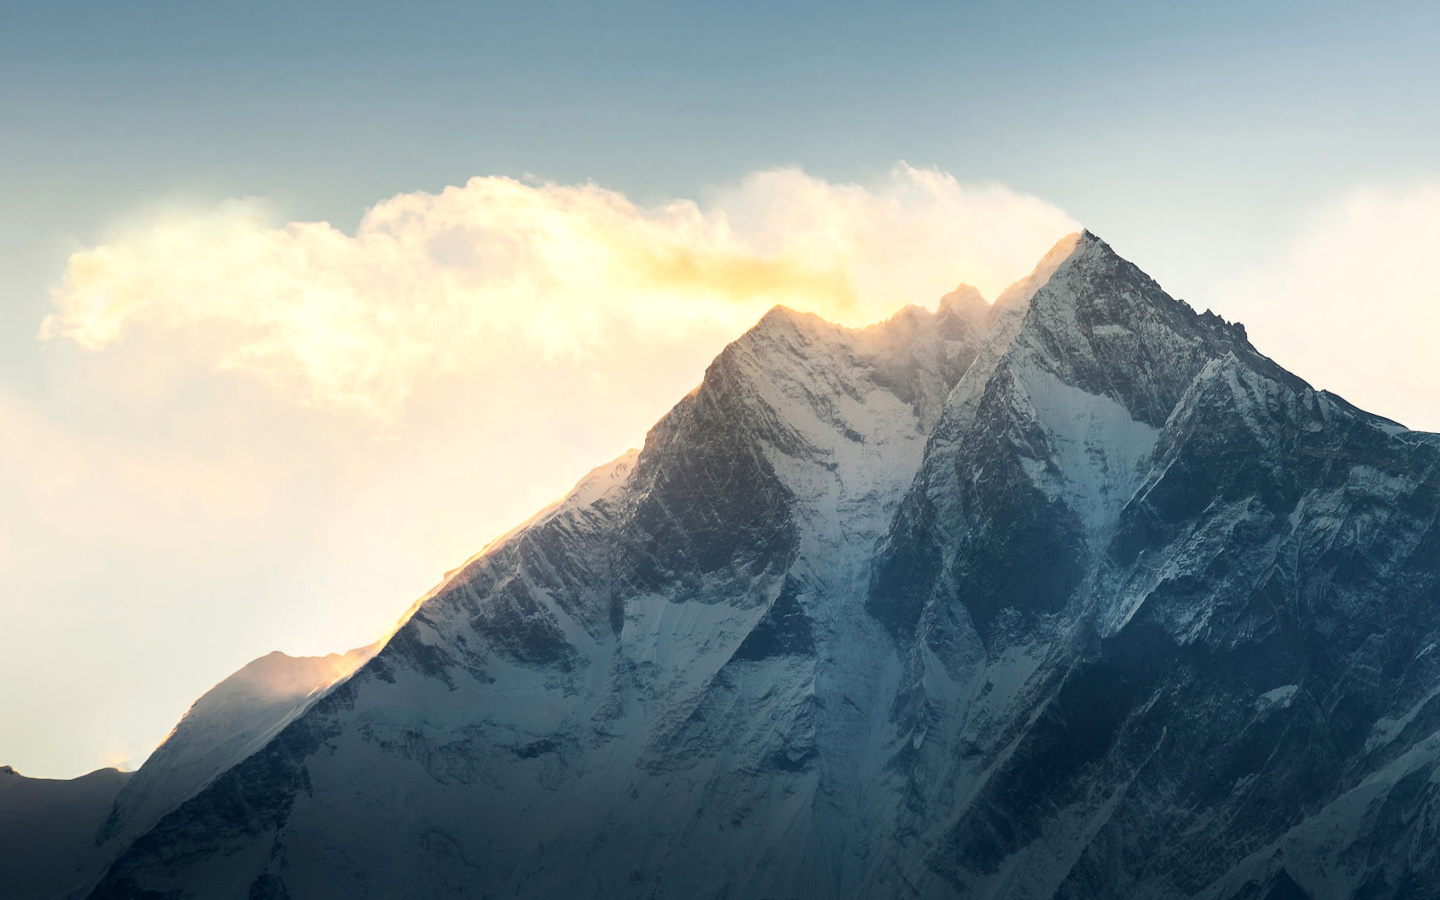 Обои Everest in Nepal 1440x900